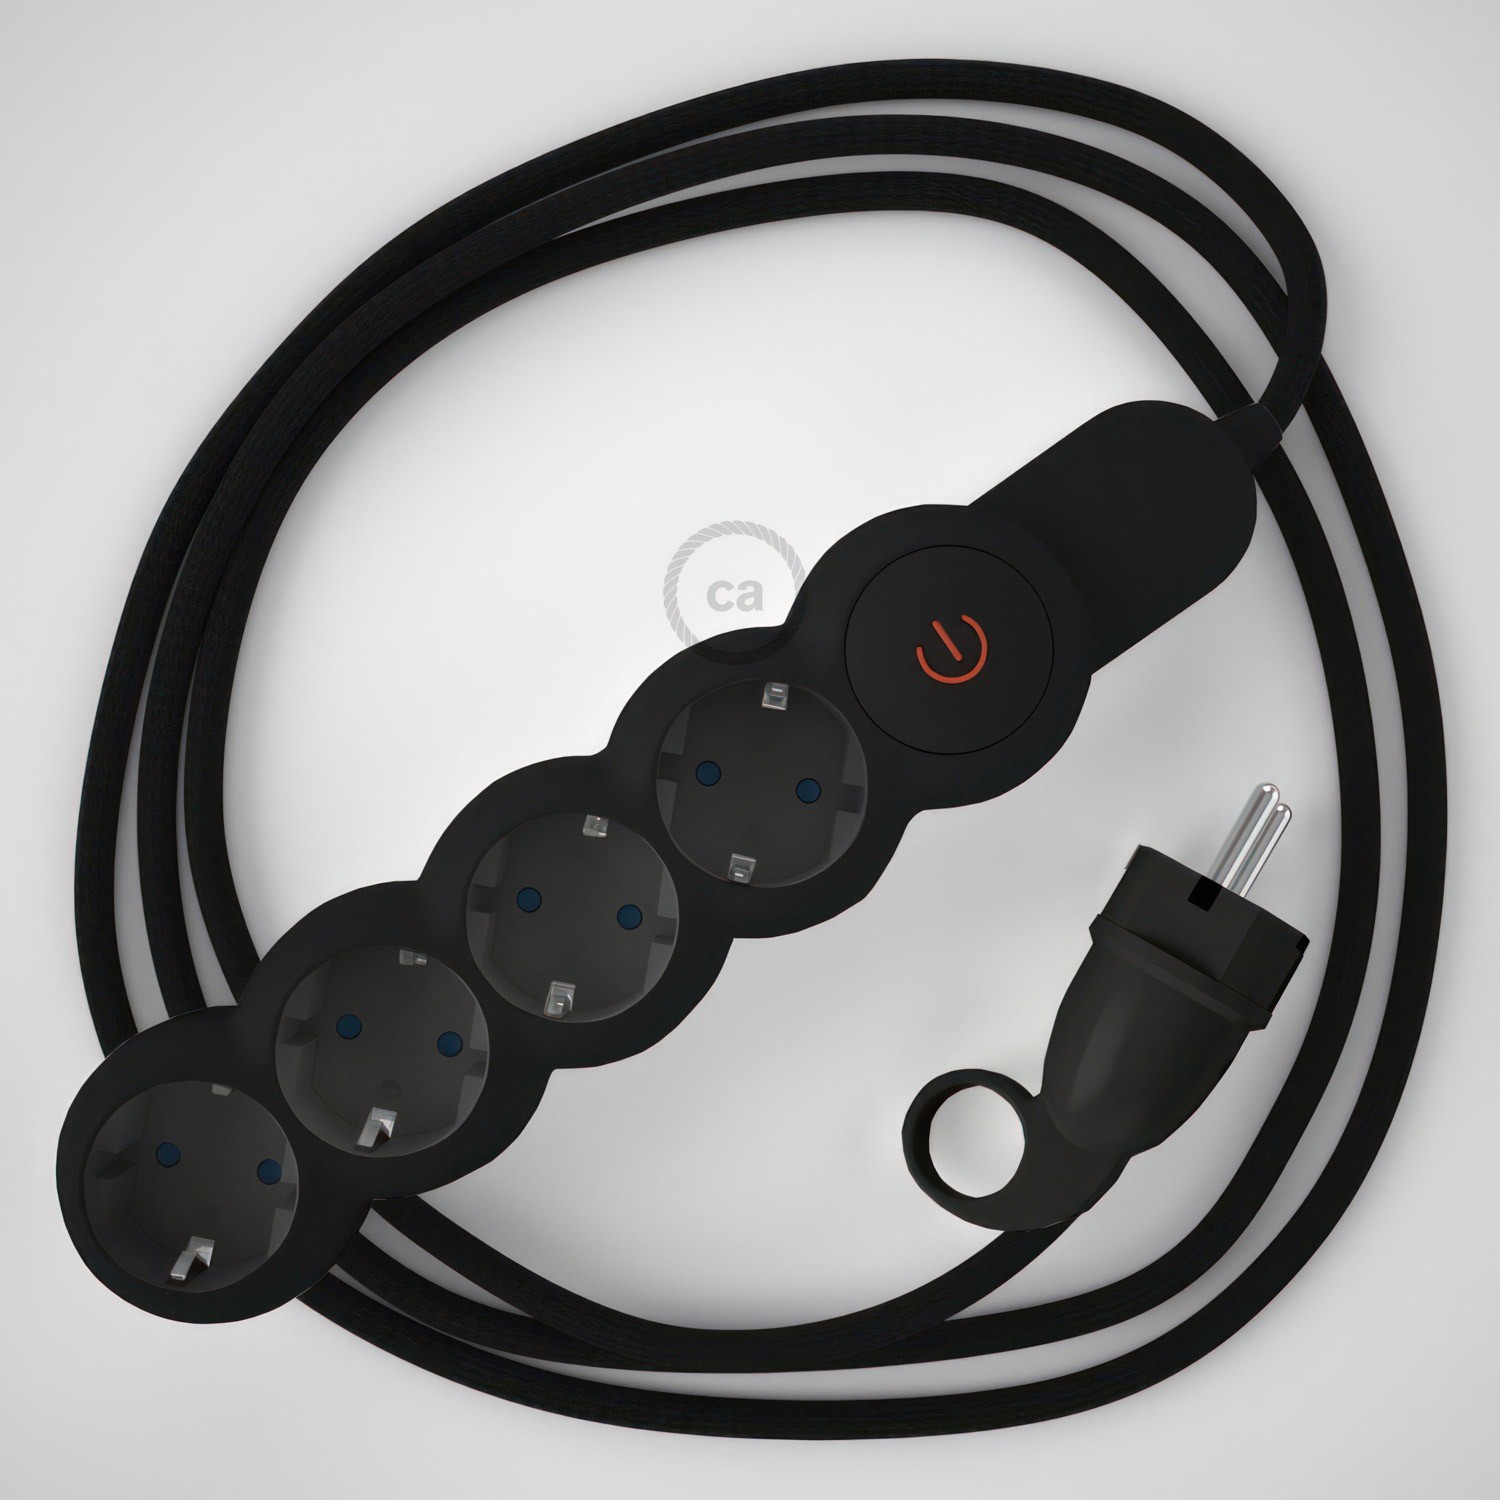 Multienchufe alemán con cable en tejido colorado efecto seda Negro RM04 y clavija Schuko con anillo comfort